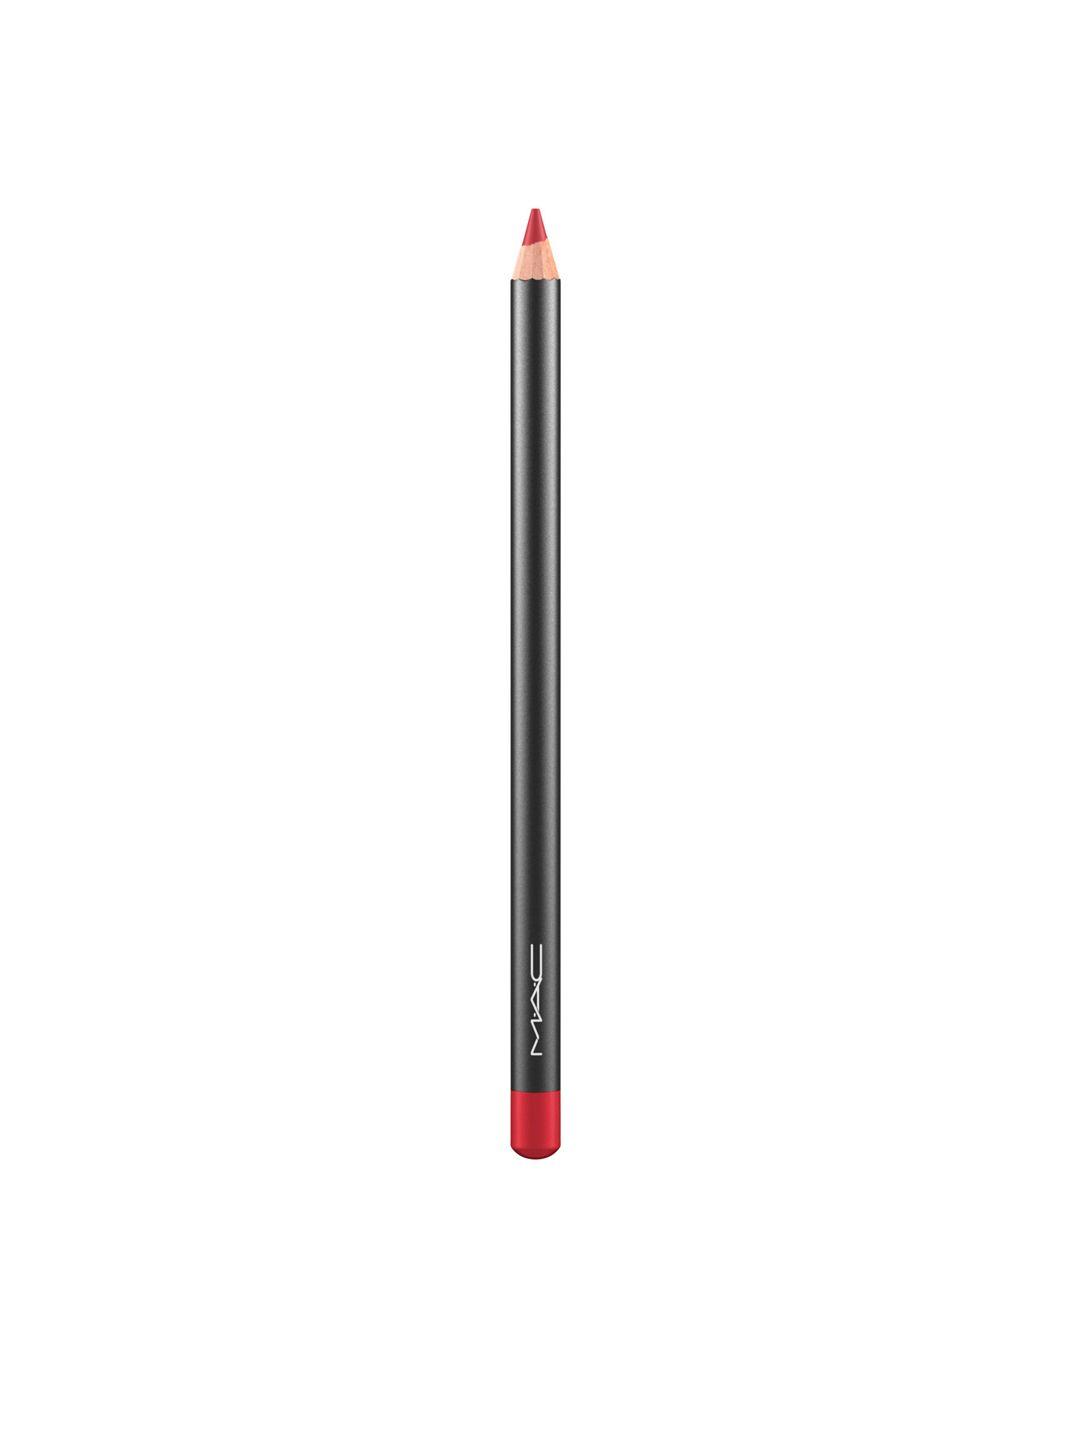 m.a.c cherry lip pencil